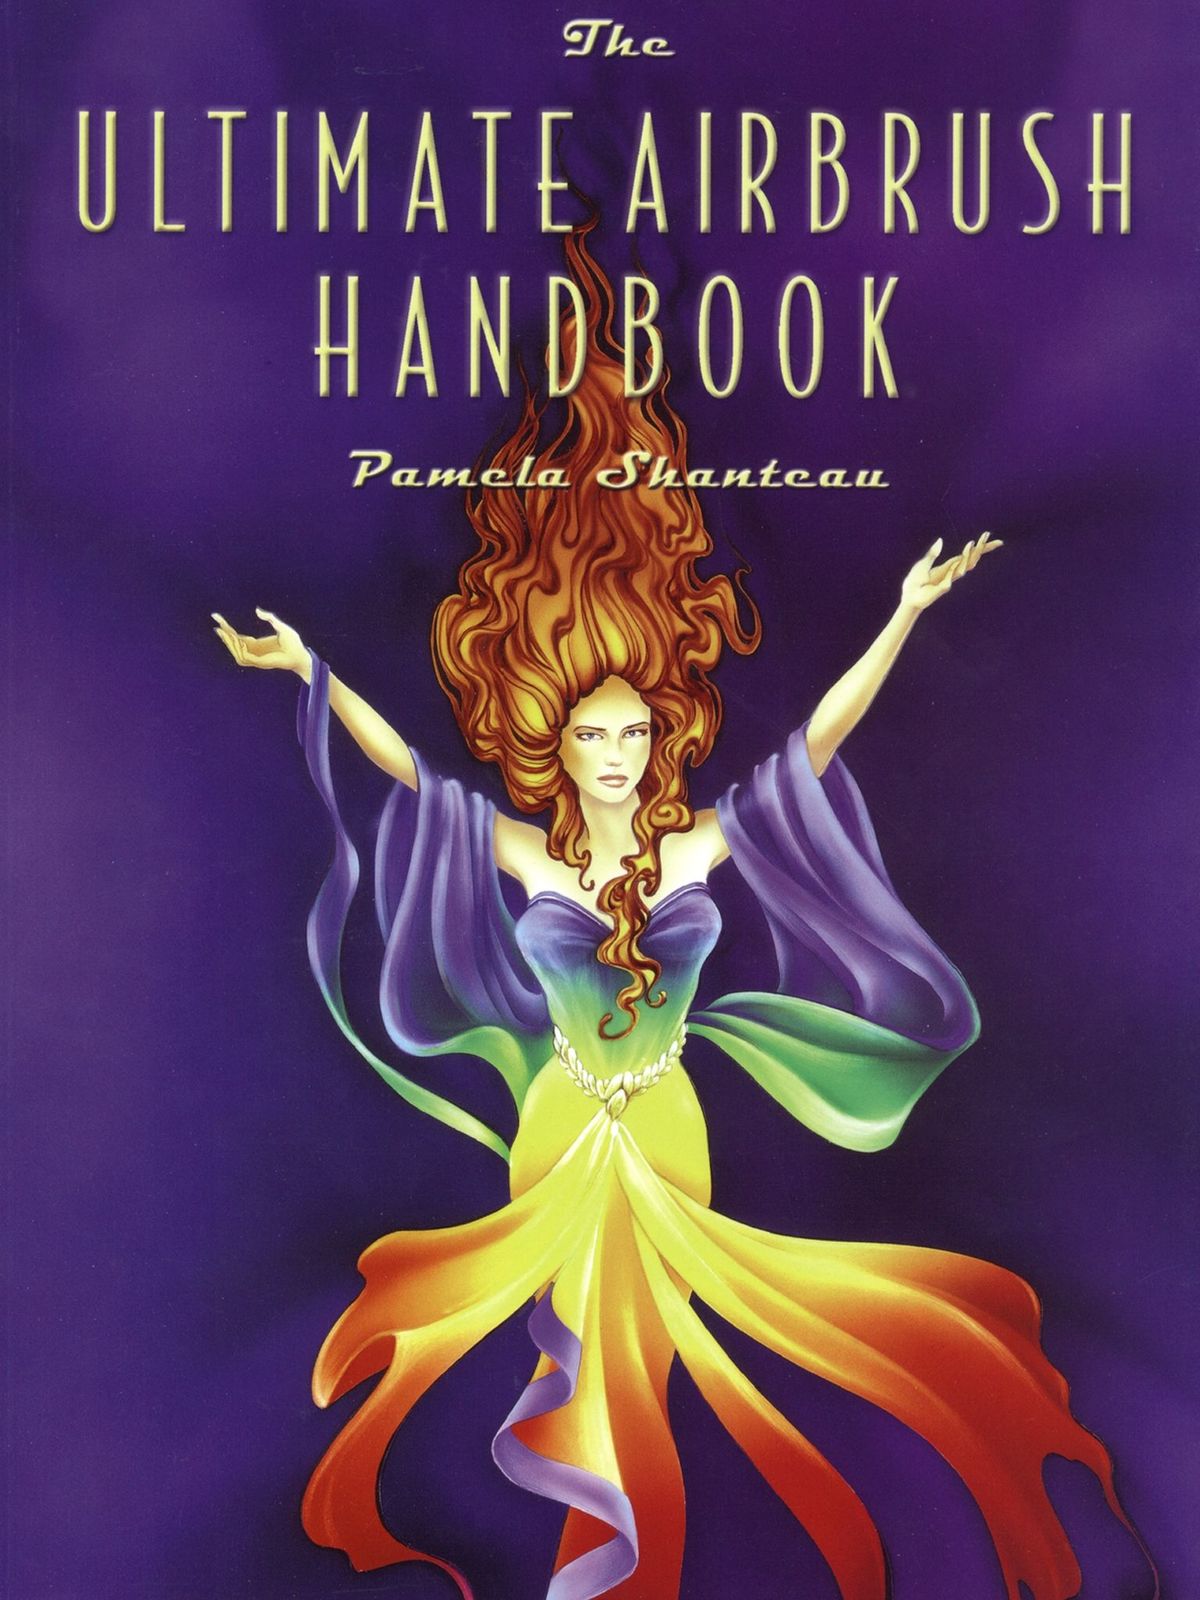 The Ultimate Airbrush Handbook The Ultimate Airbrush Handbook